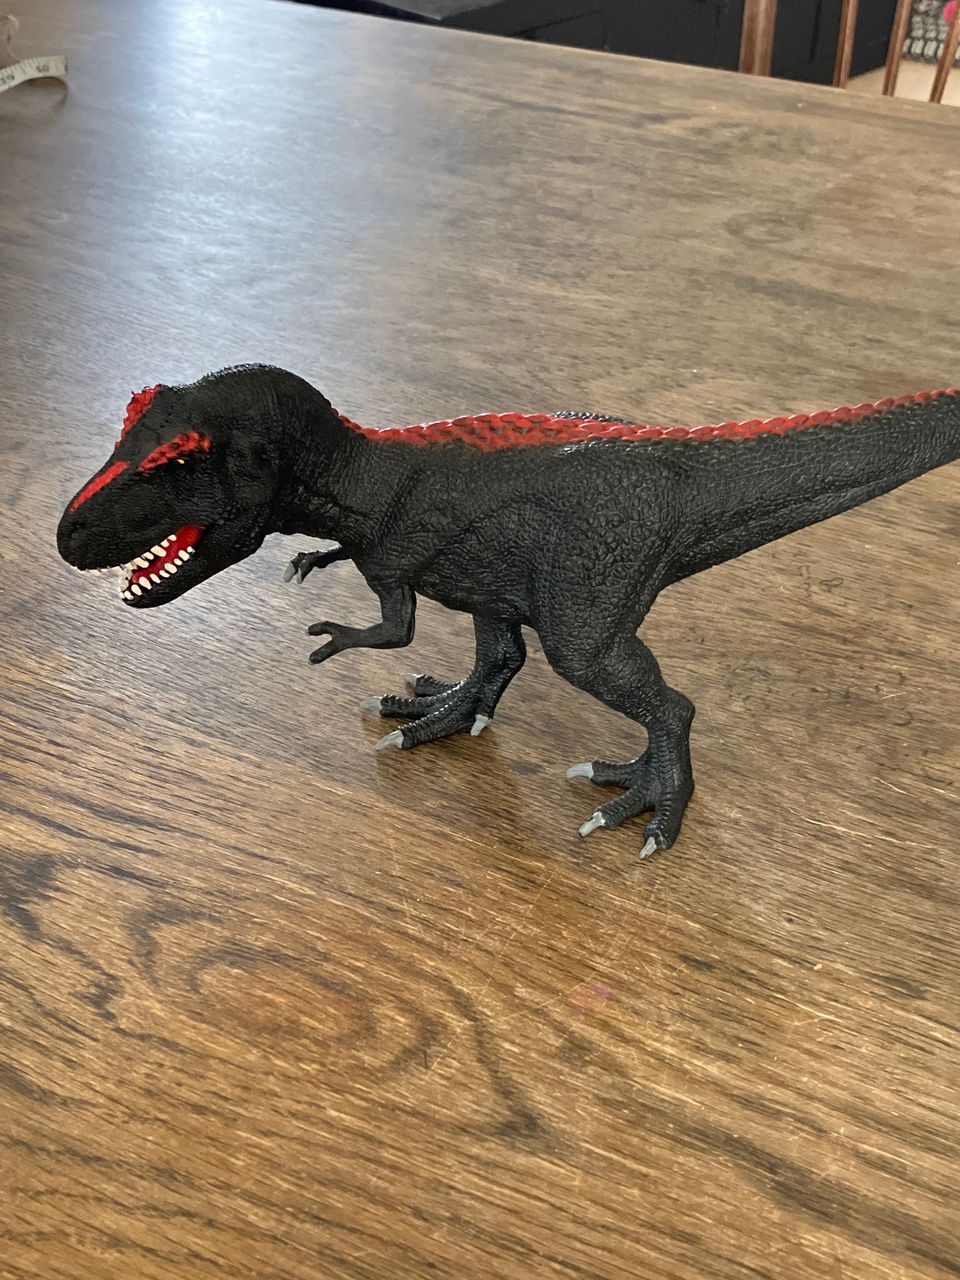 Jurassic world T-Rex